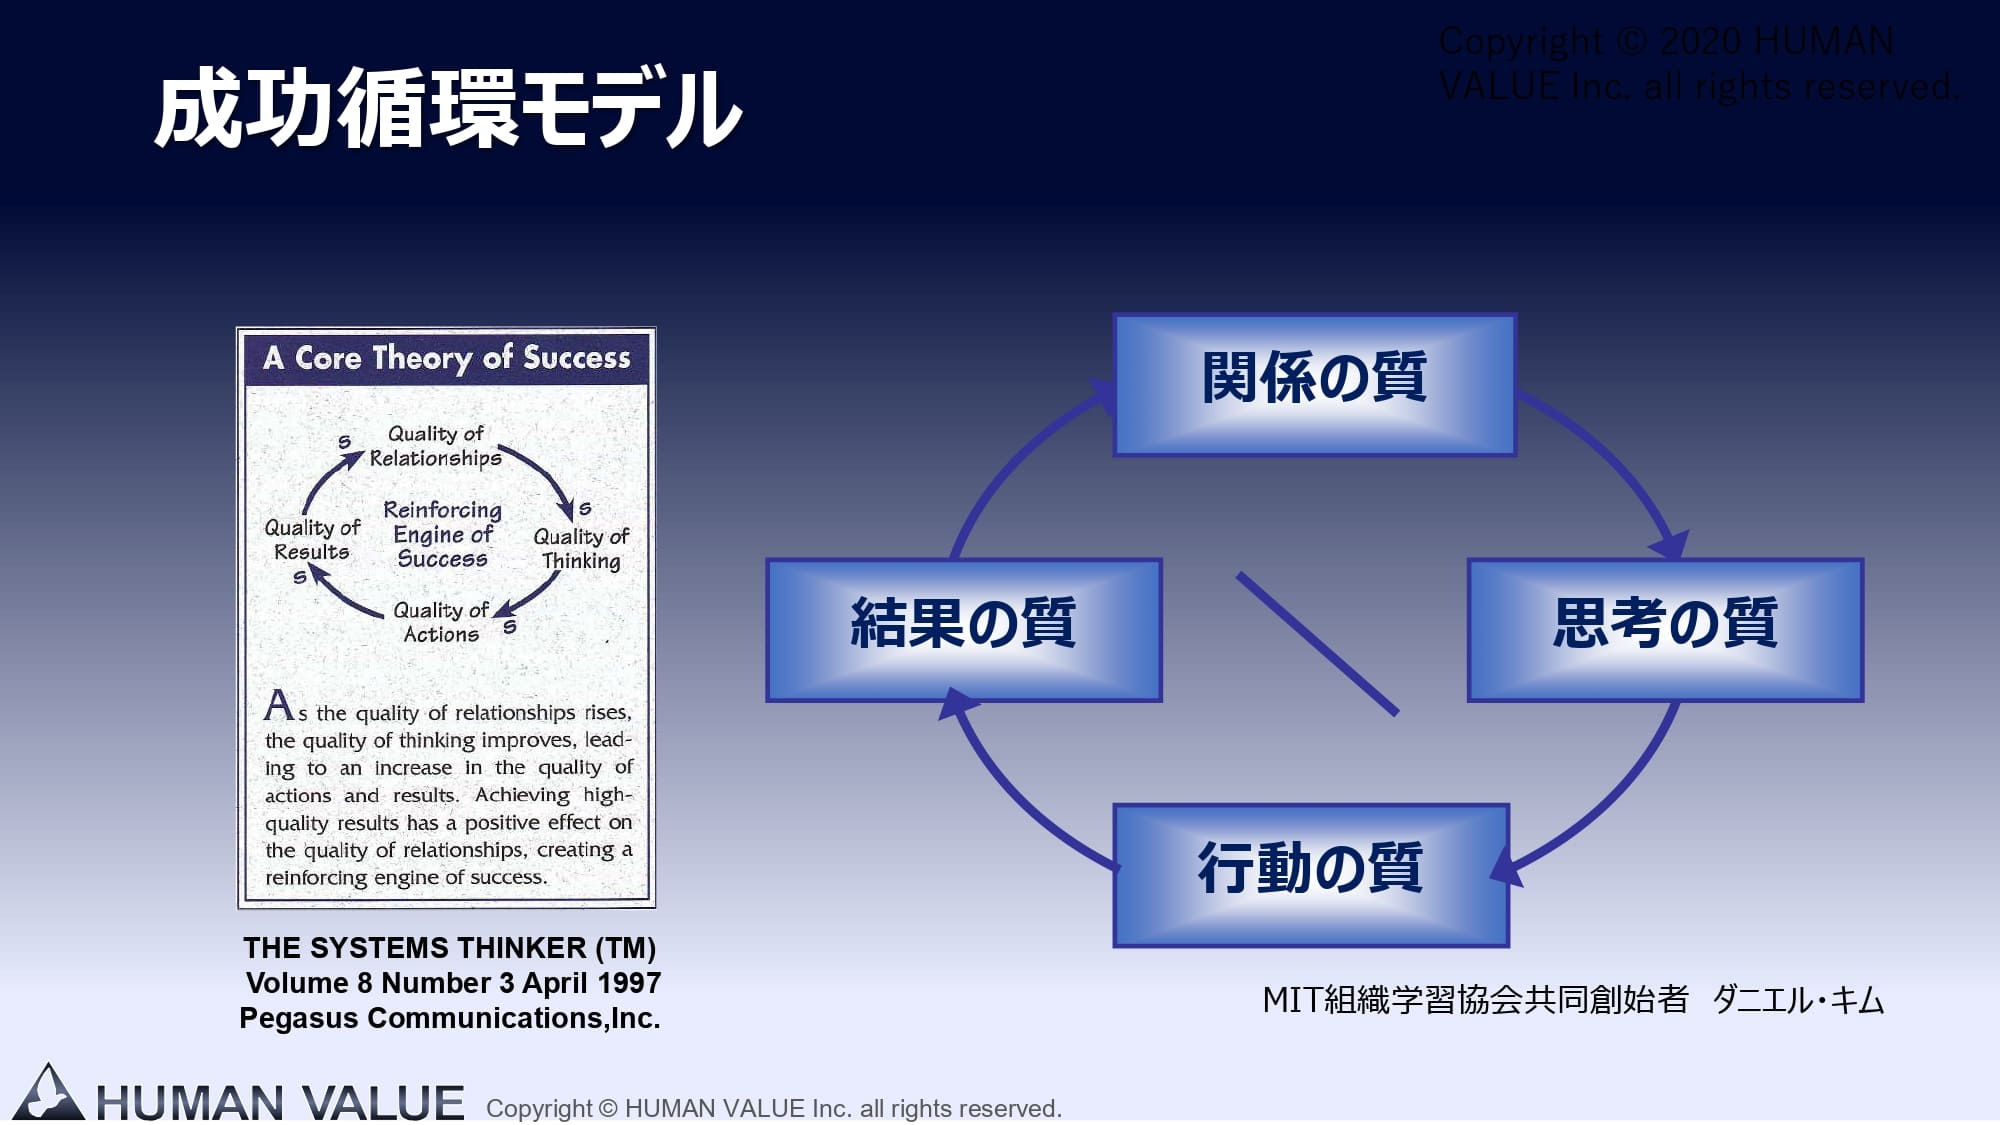 ダニエルキム 組織の成功循環モデル 本 ダニエルキム 組織の成功循環モデル 本